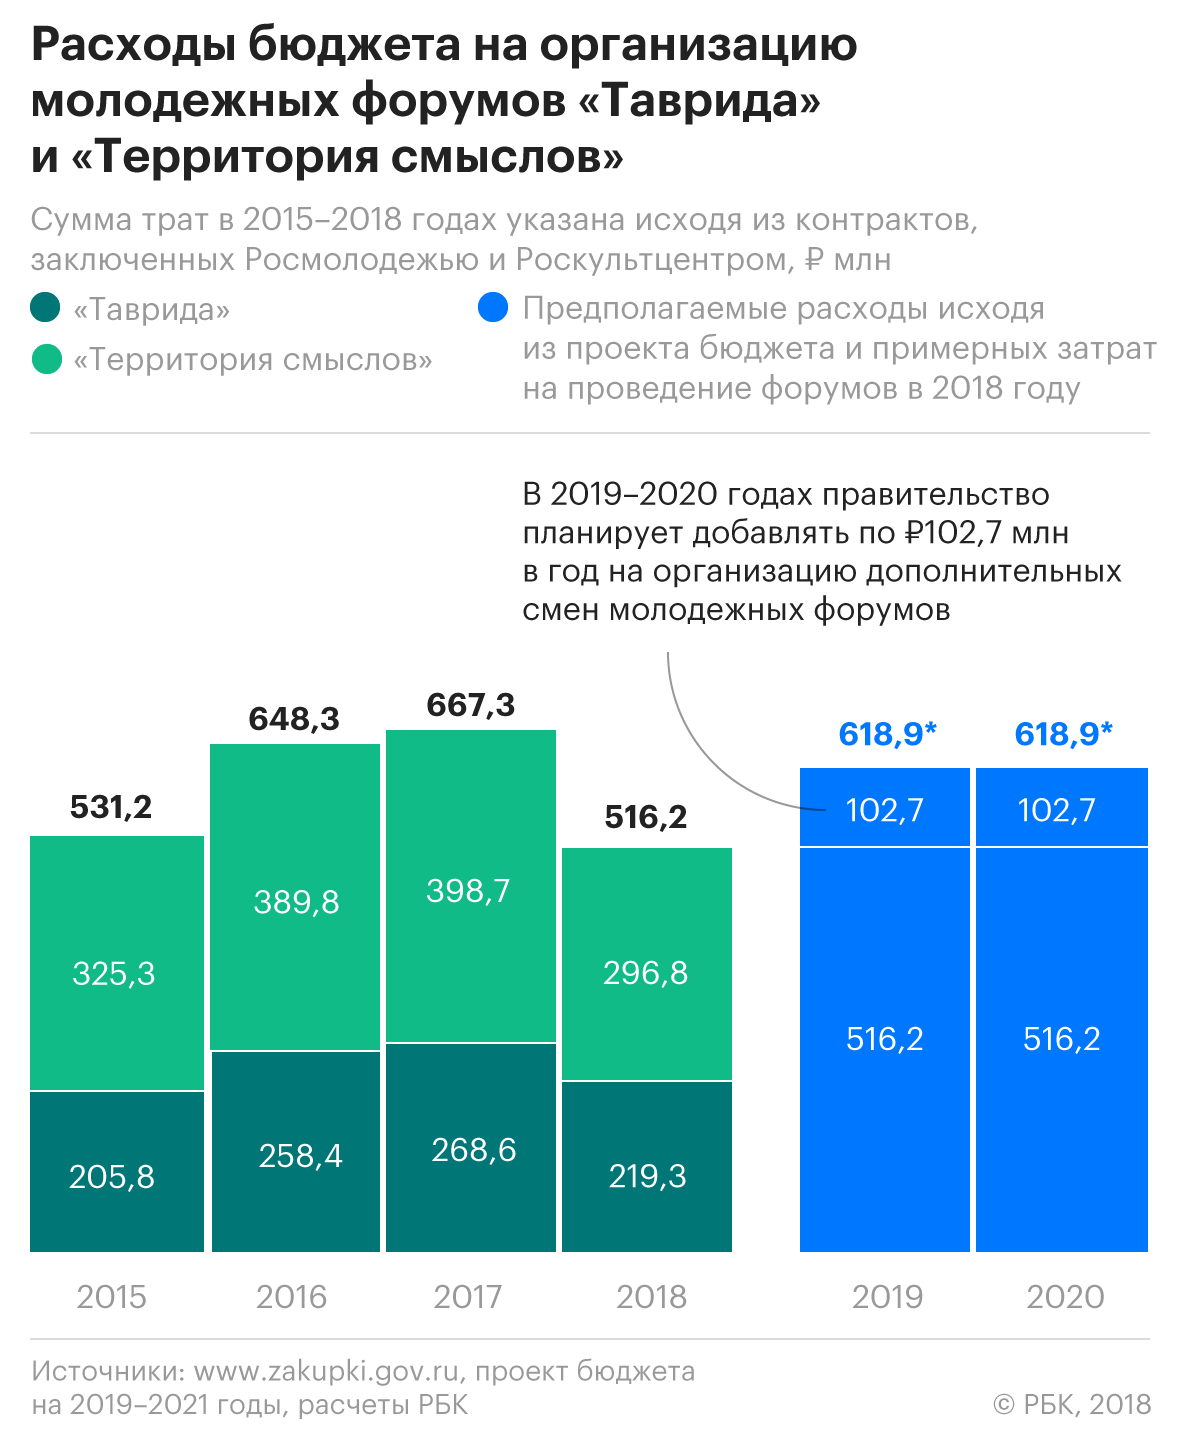 Правительство увеличит финансирование кремлевских лагерей на 103 млн руб.